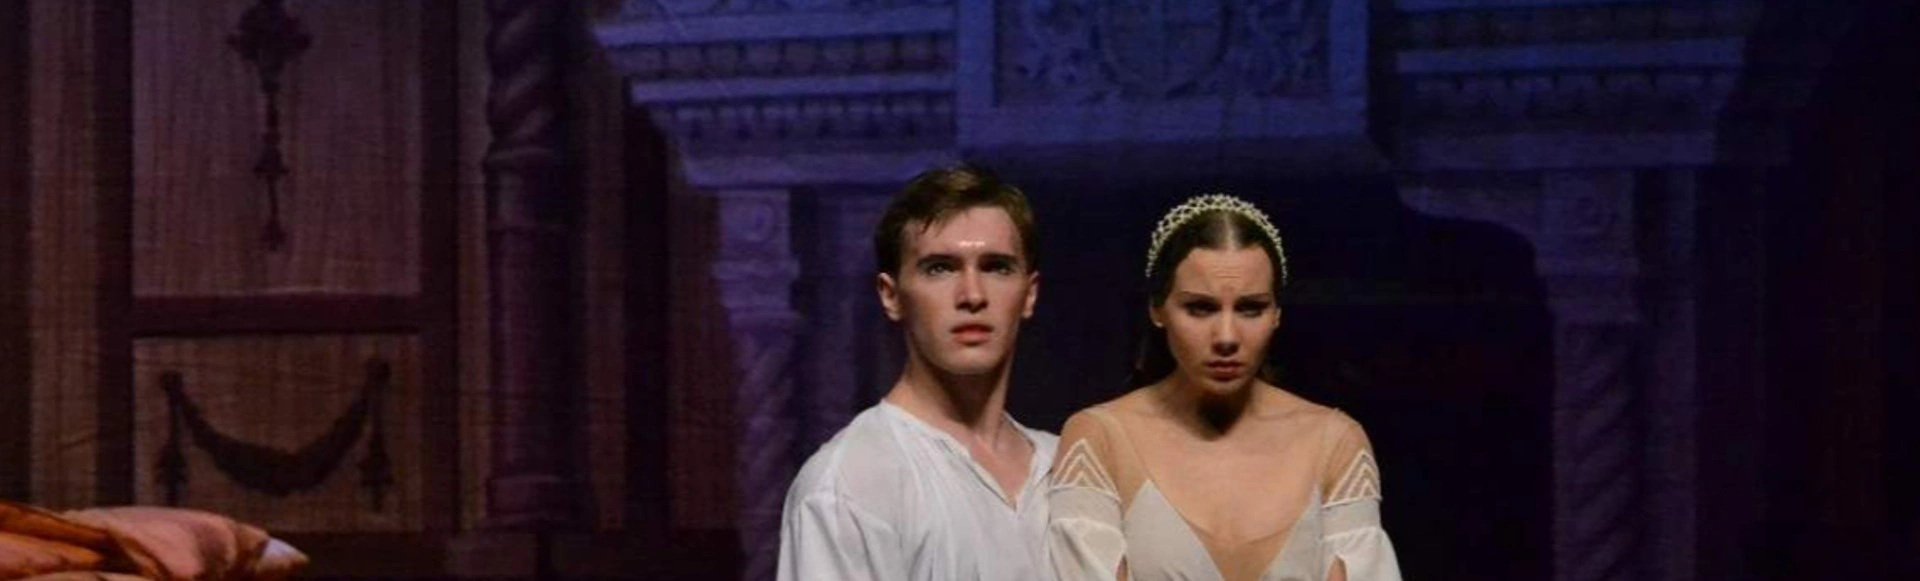 Ромео и Джульетта (Театр балета им. П.И. Чайковского)